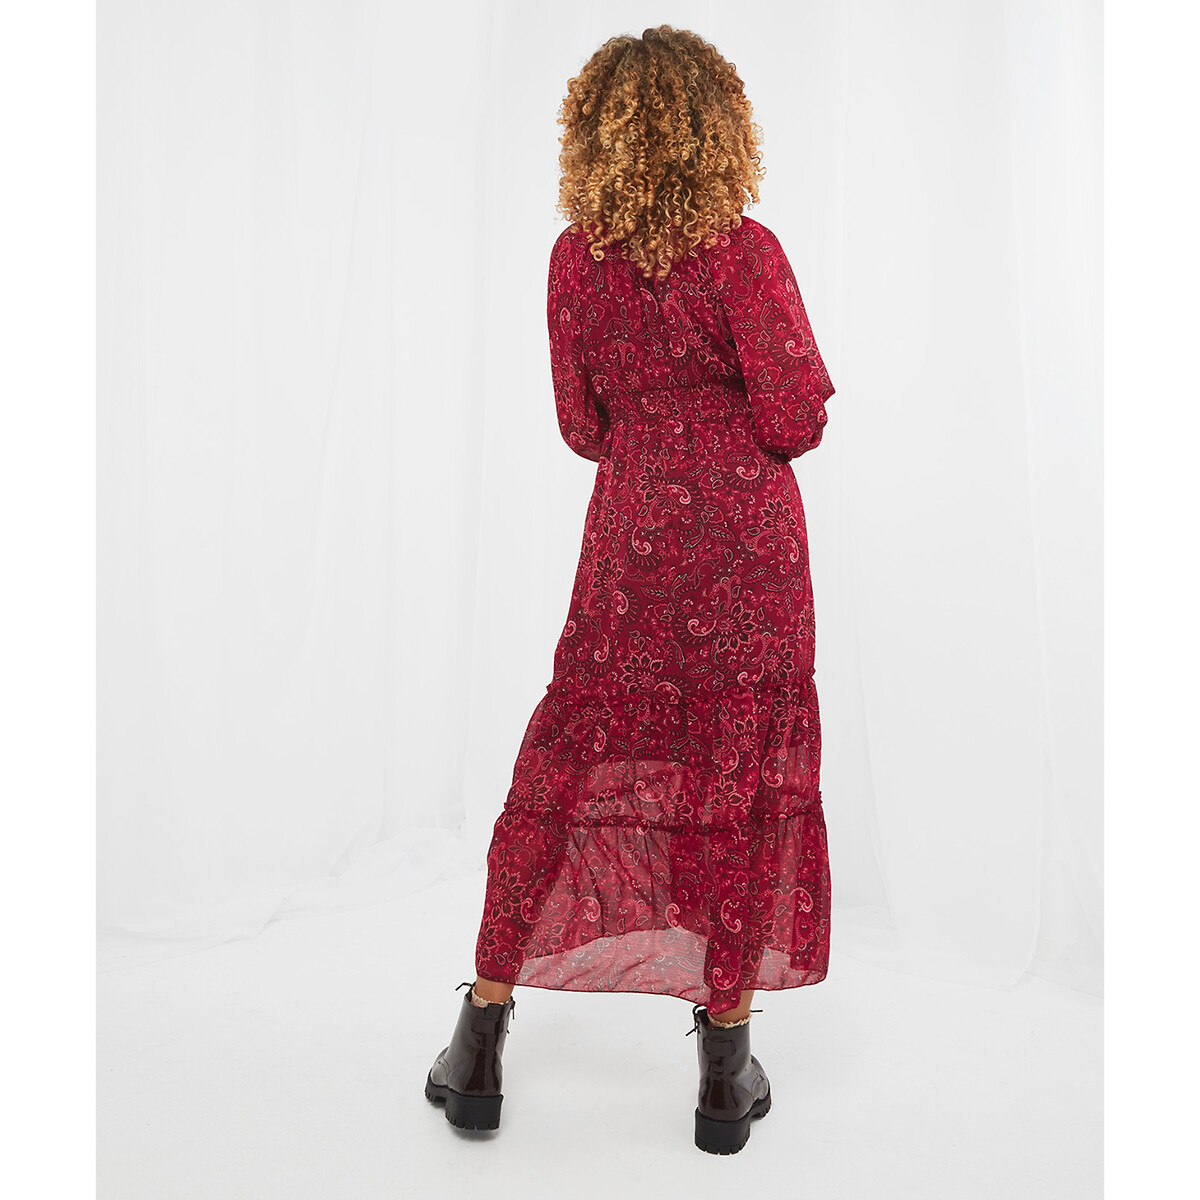 Платье JOE BROWNS Платье Из вуали пояс со сборками принт пейсли 42 розовый, размер 42 - фото 3